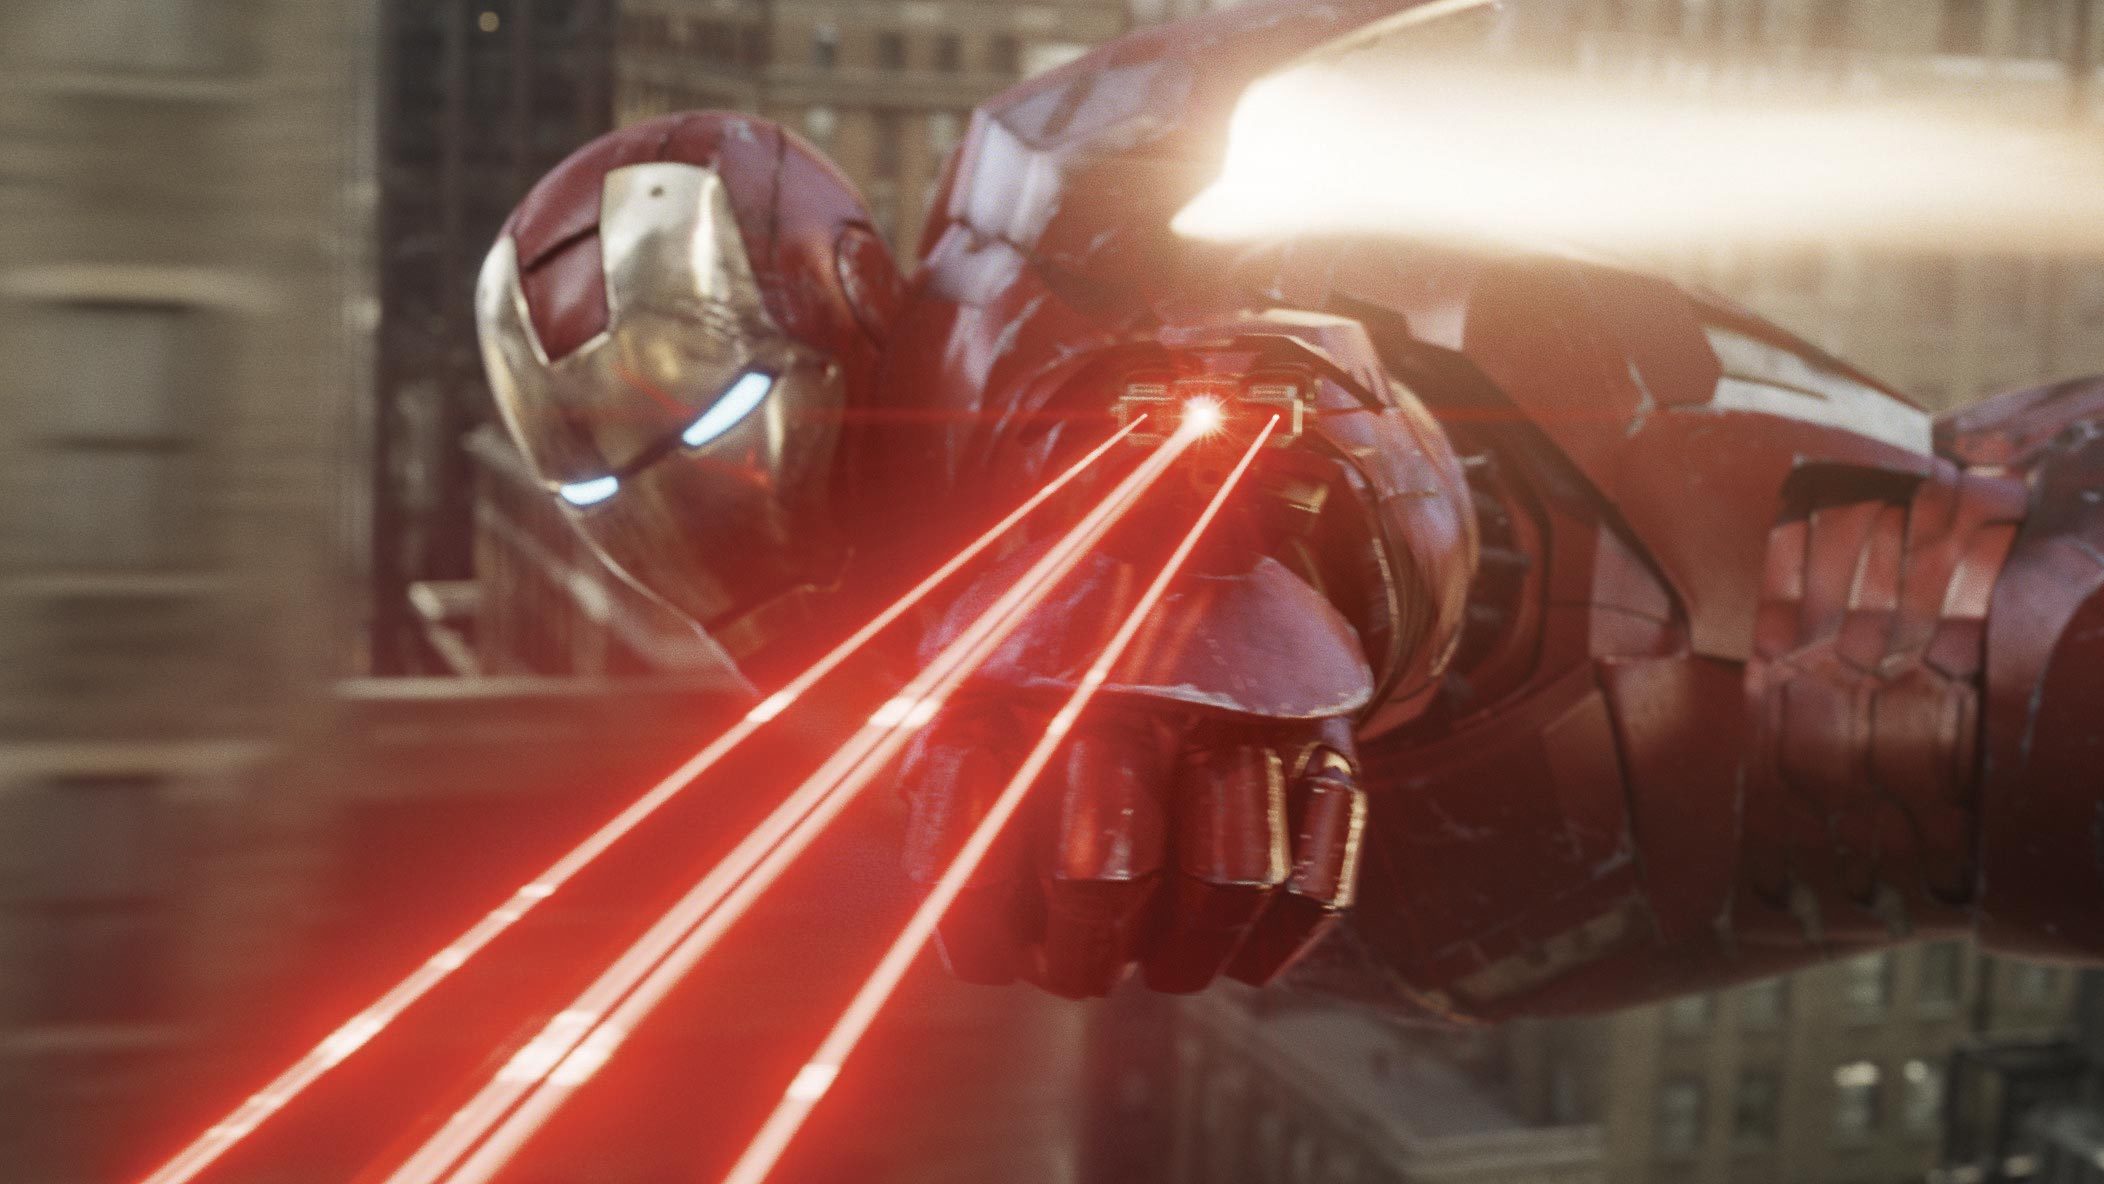 Descarga gratuita de fondo de pantalla para móvil de Cine, Iron Man.